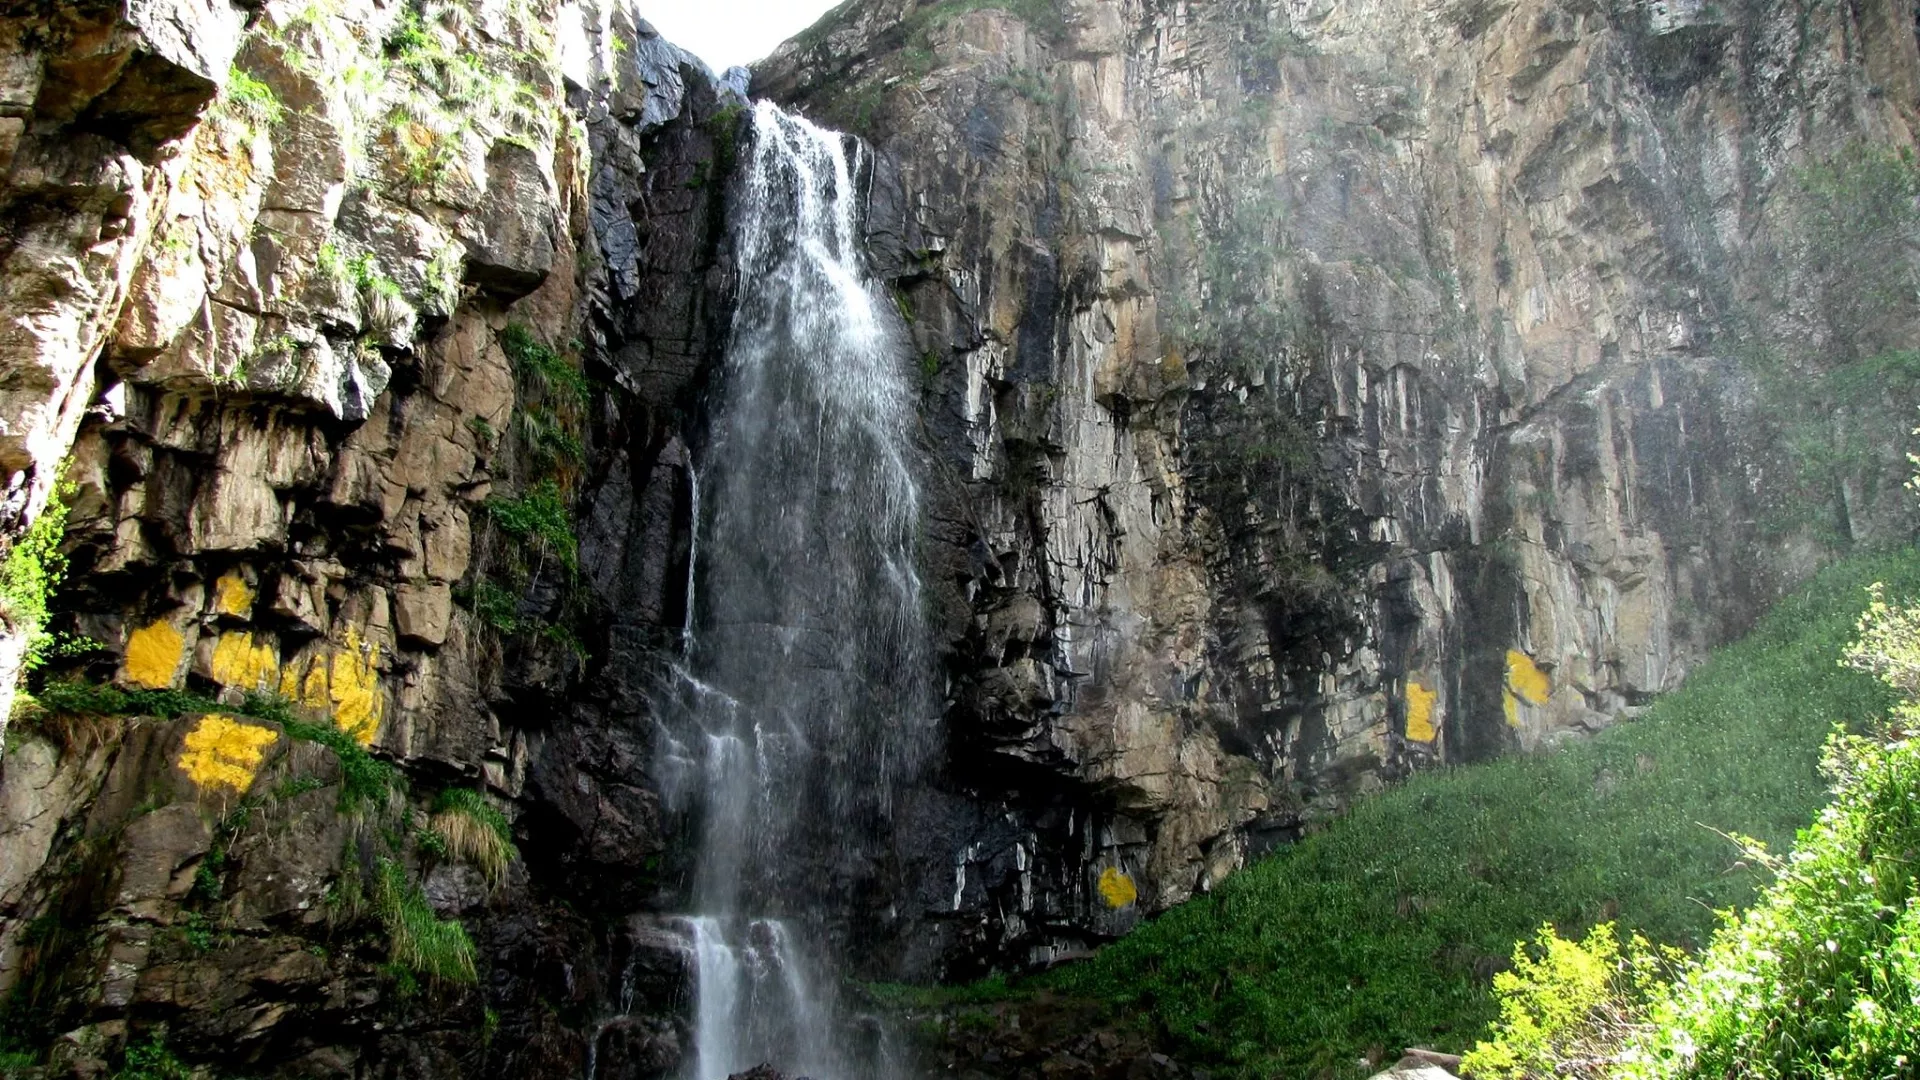 Butakovsky waterfall